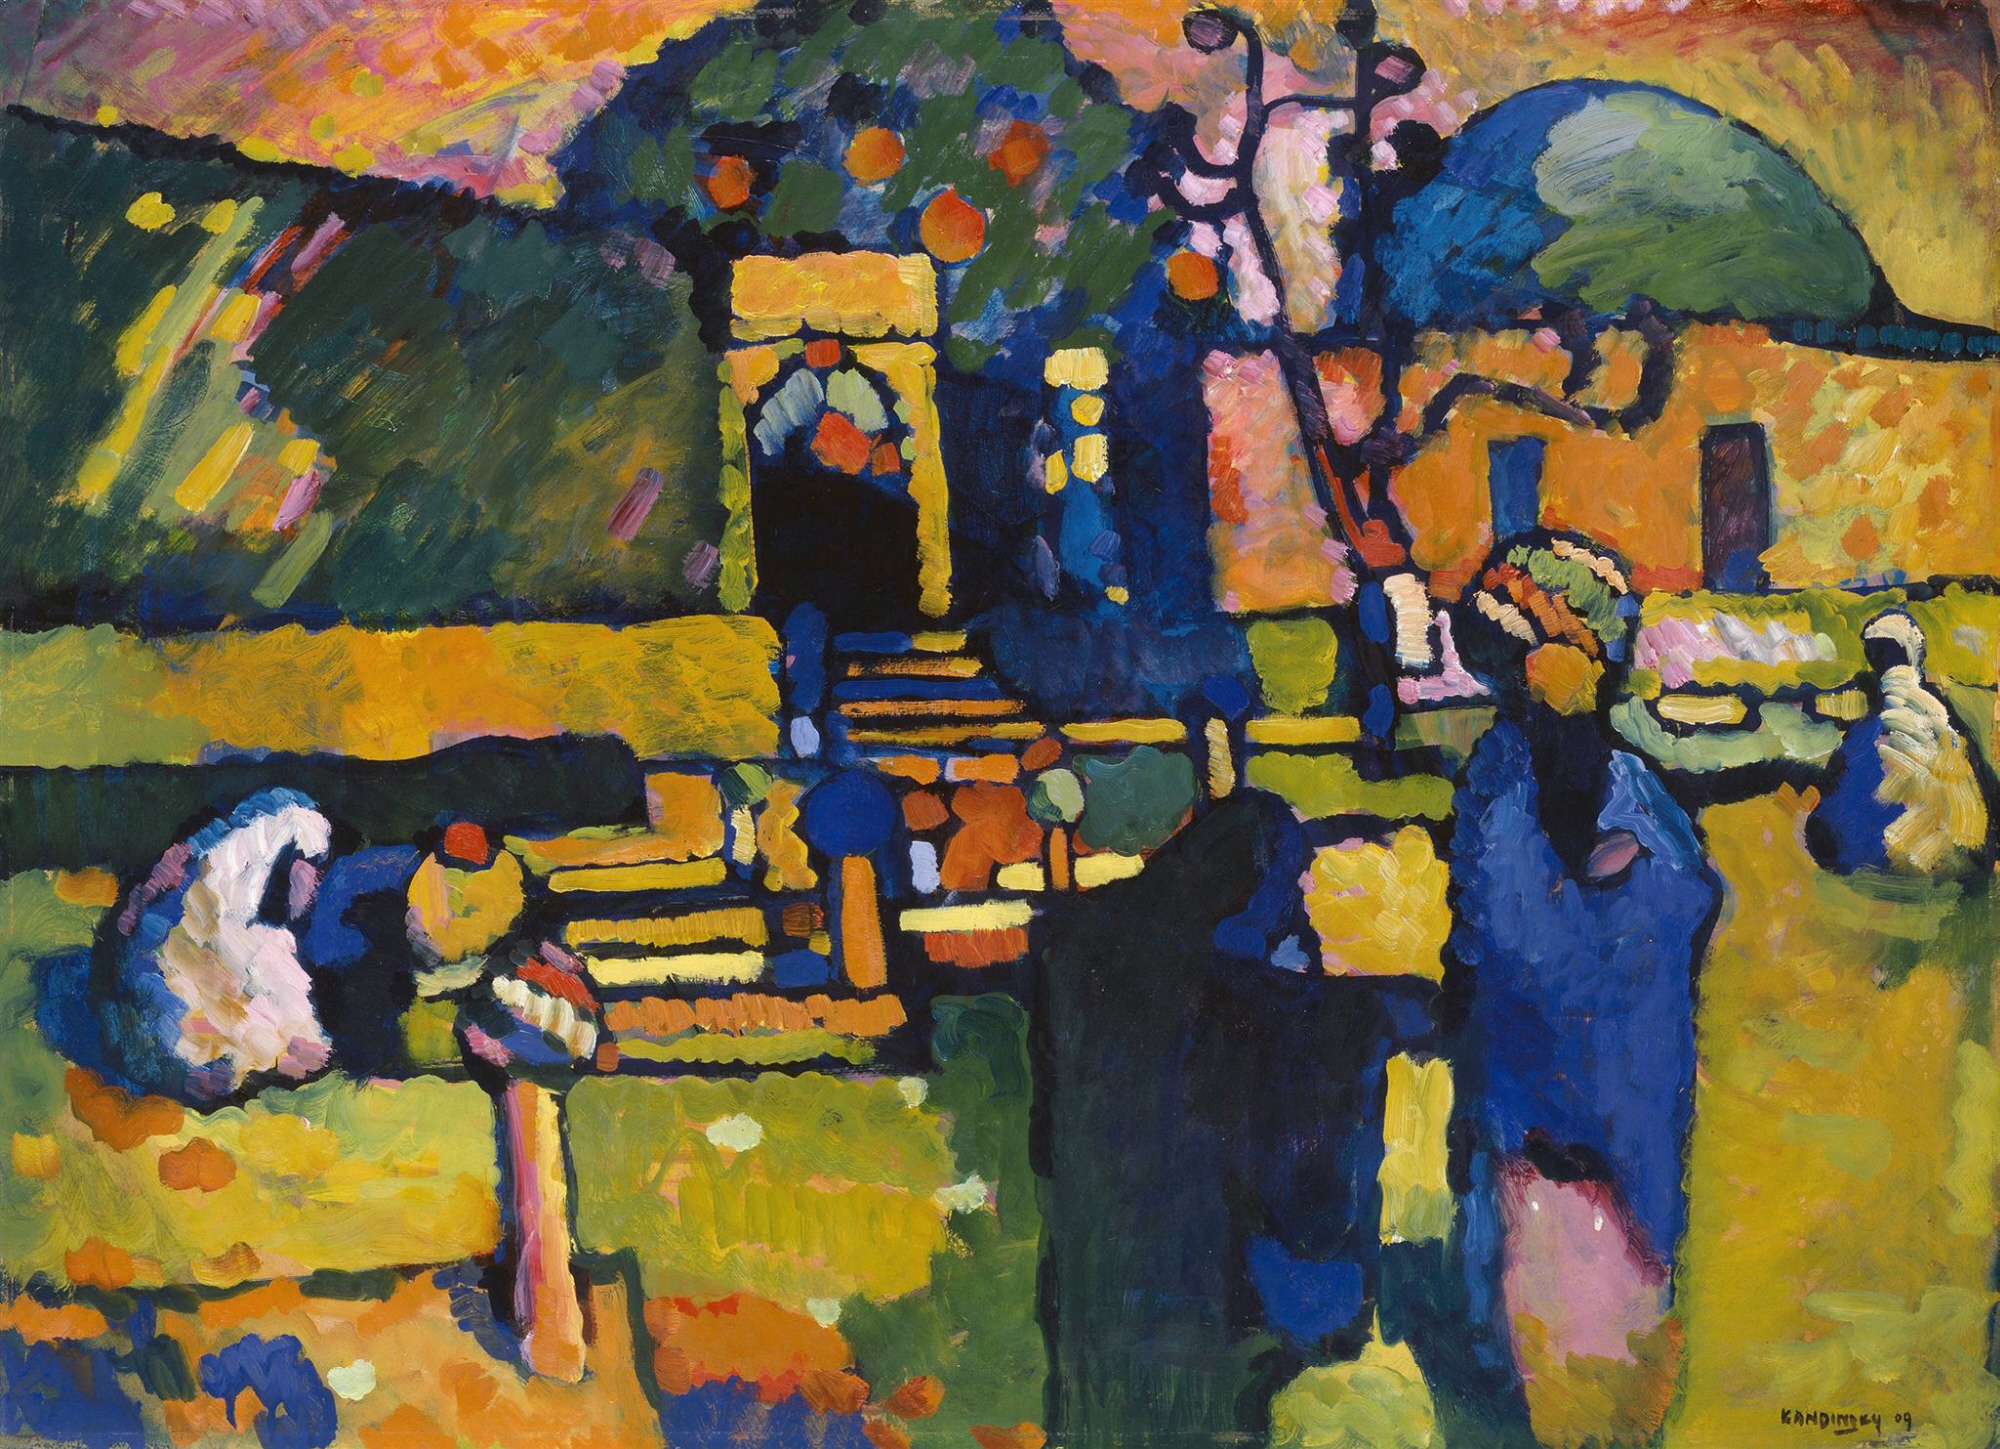 La peinture saisissante de Kandinsky Arabes I (cimetière) met en valeur son incursion dans l’art abstrait (Hamburger Kunsthalle/Elke Walford)